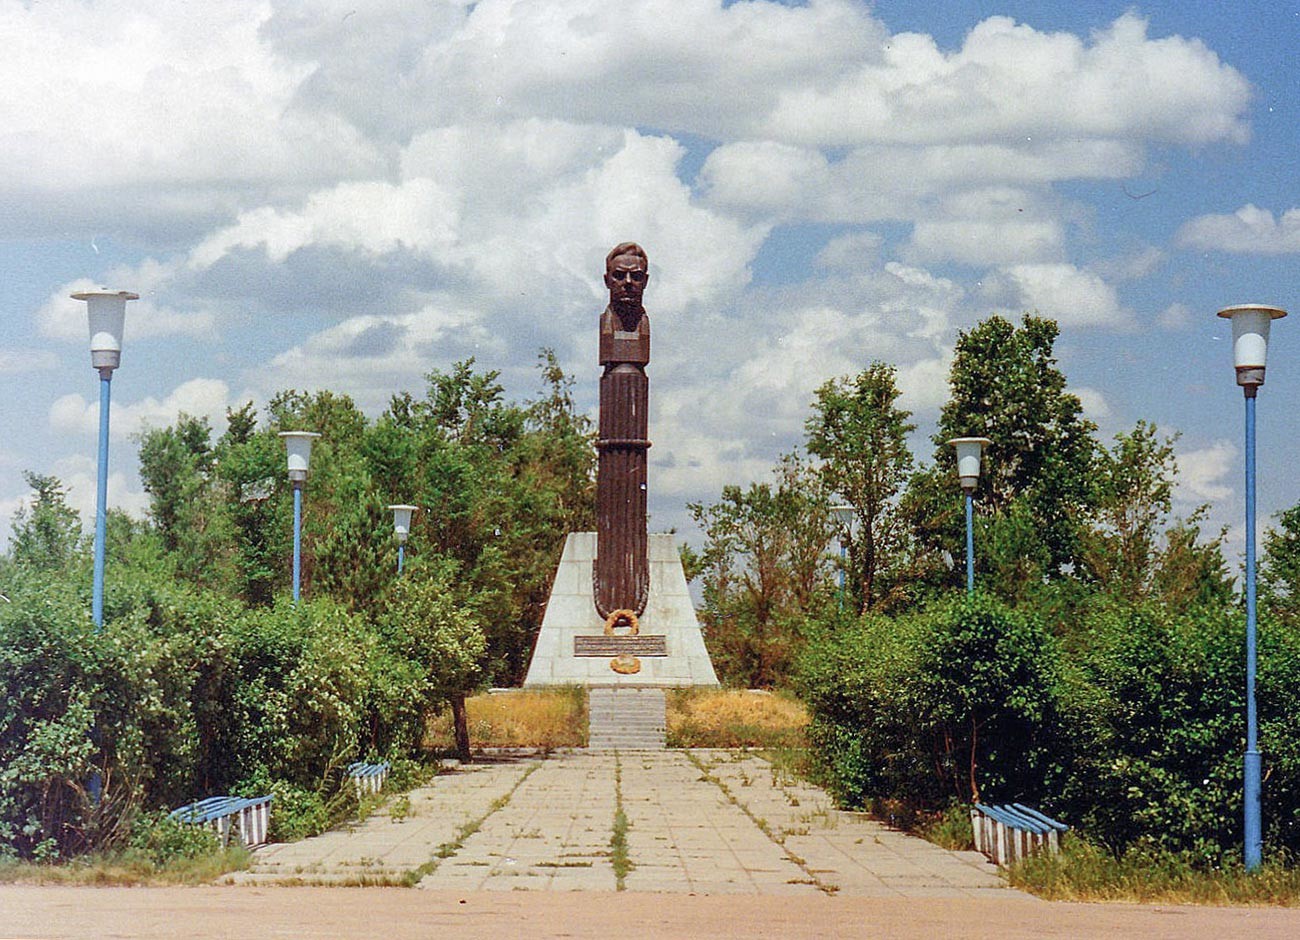 A monument in honour of Vladimir Komarov.